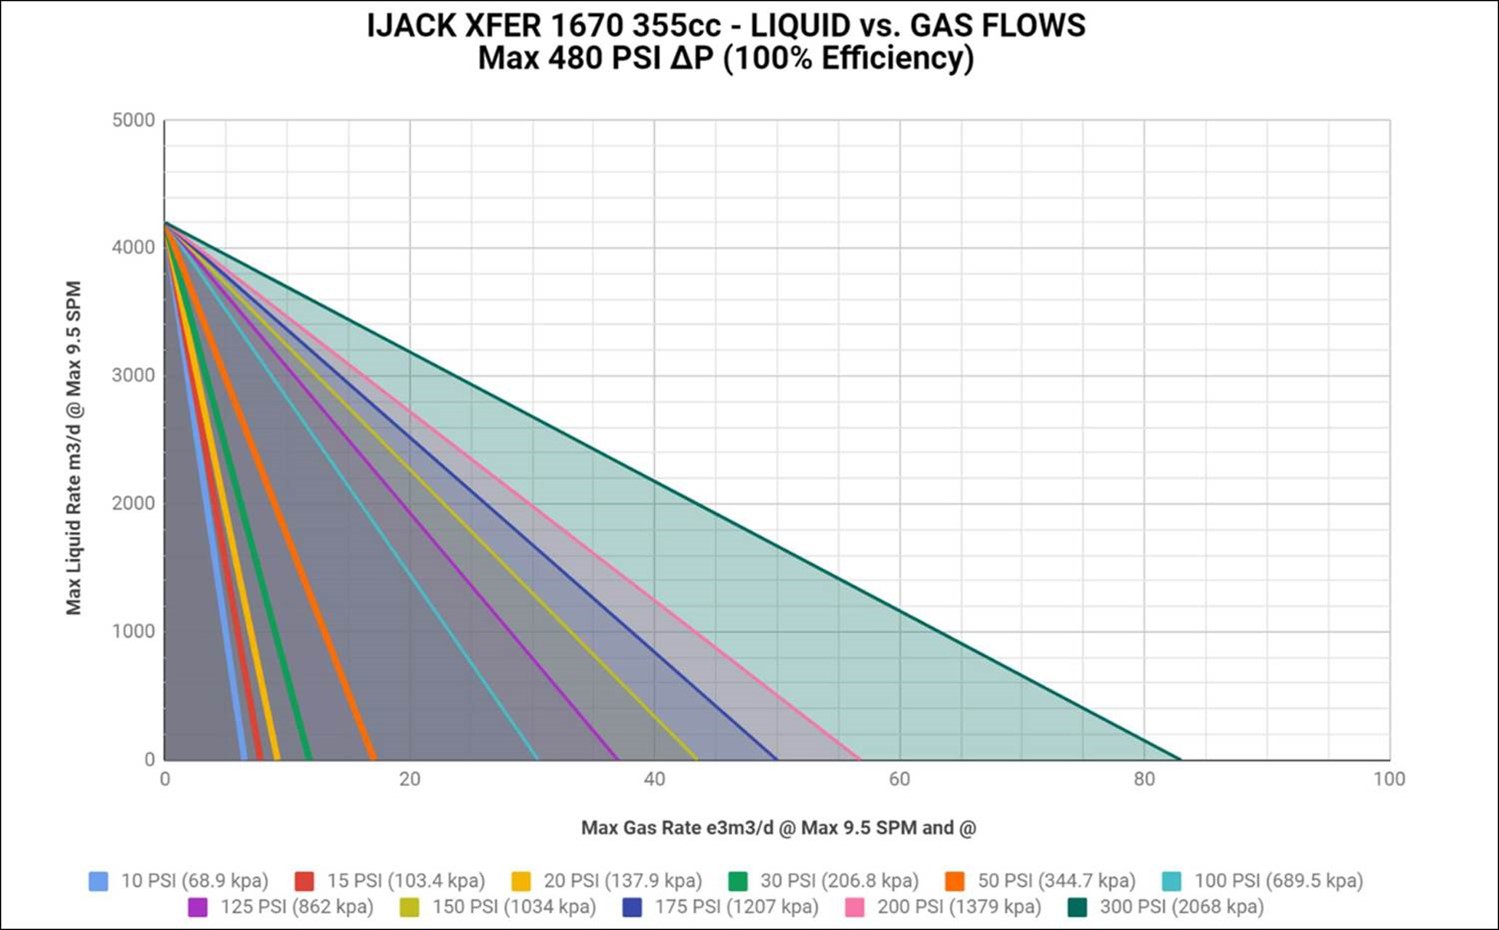 IJACK XFER 1670 355cc liquid vs gas flows max 480 PSI delta-p at 100 percent efficiency